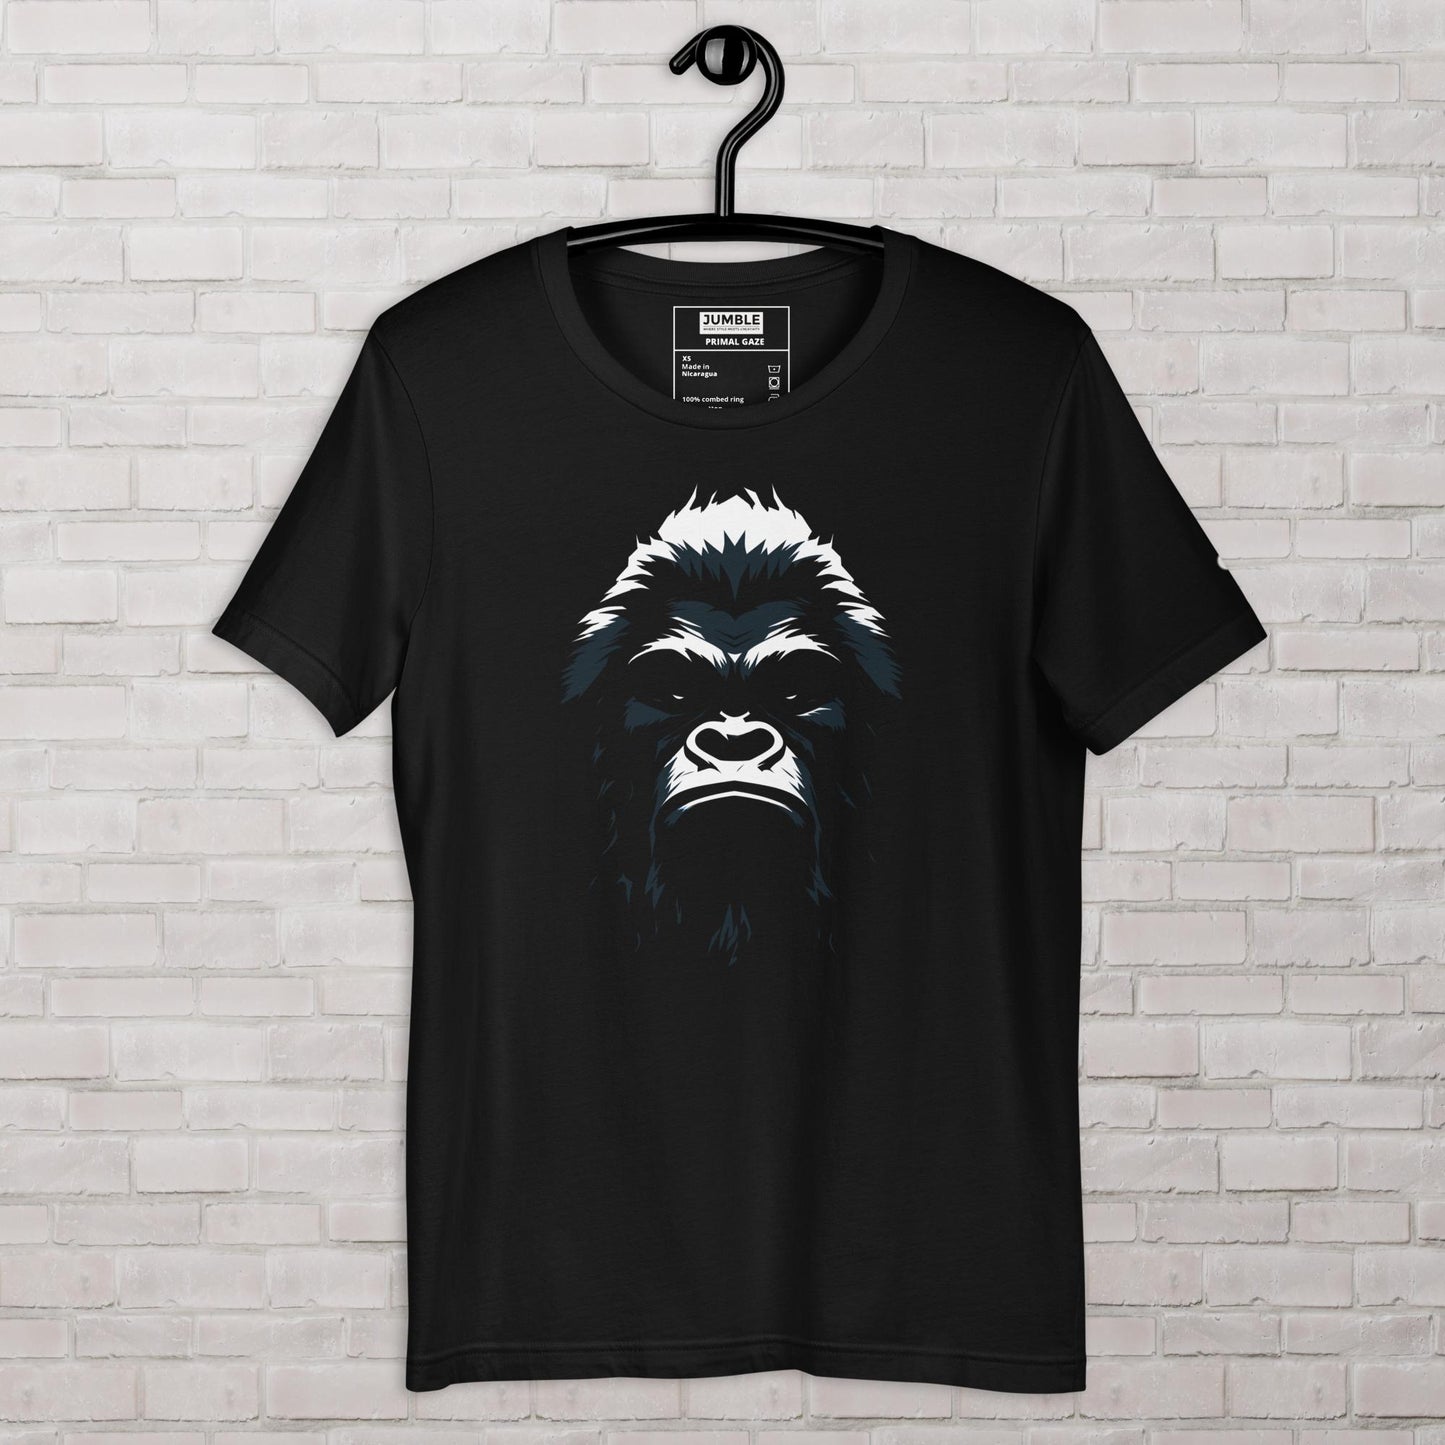 Primal Gaze Unisex t-shirt- on hanger